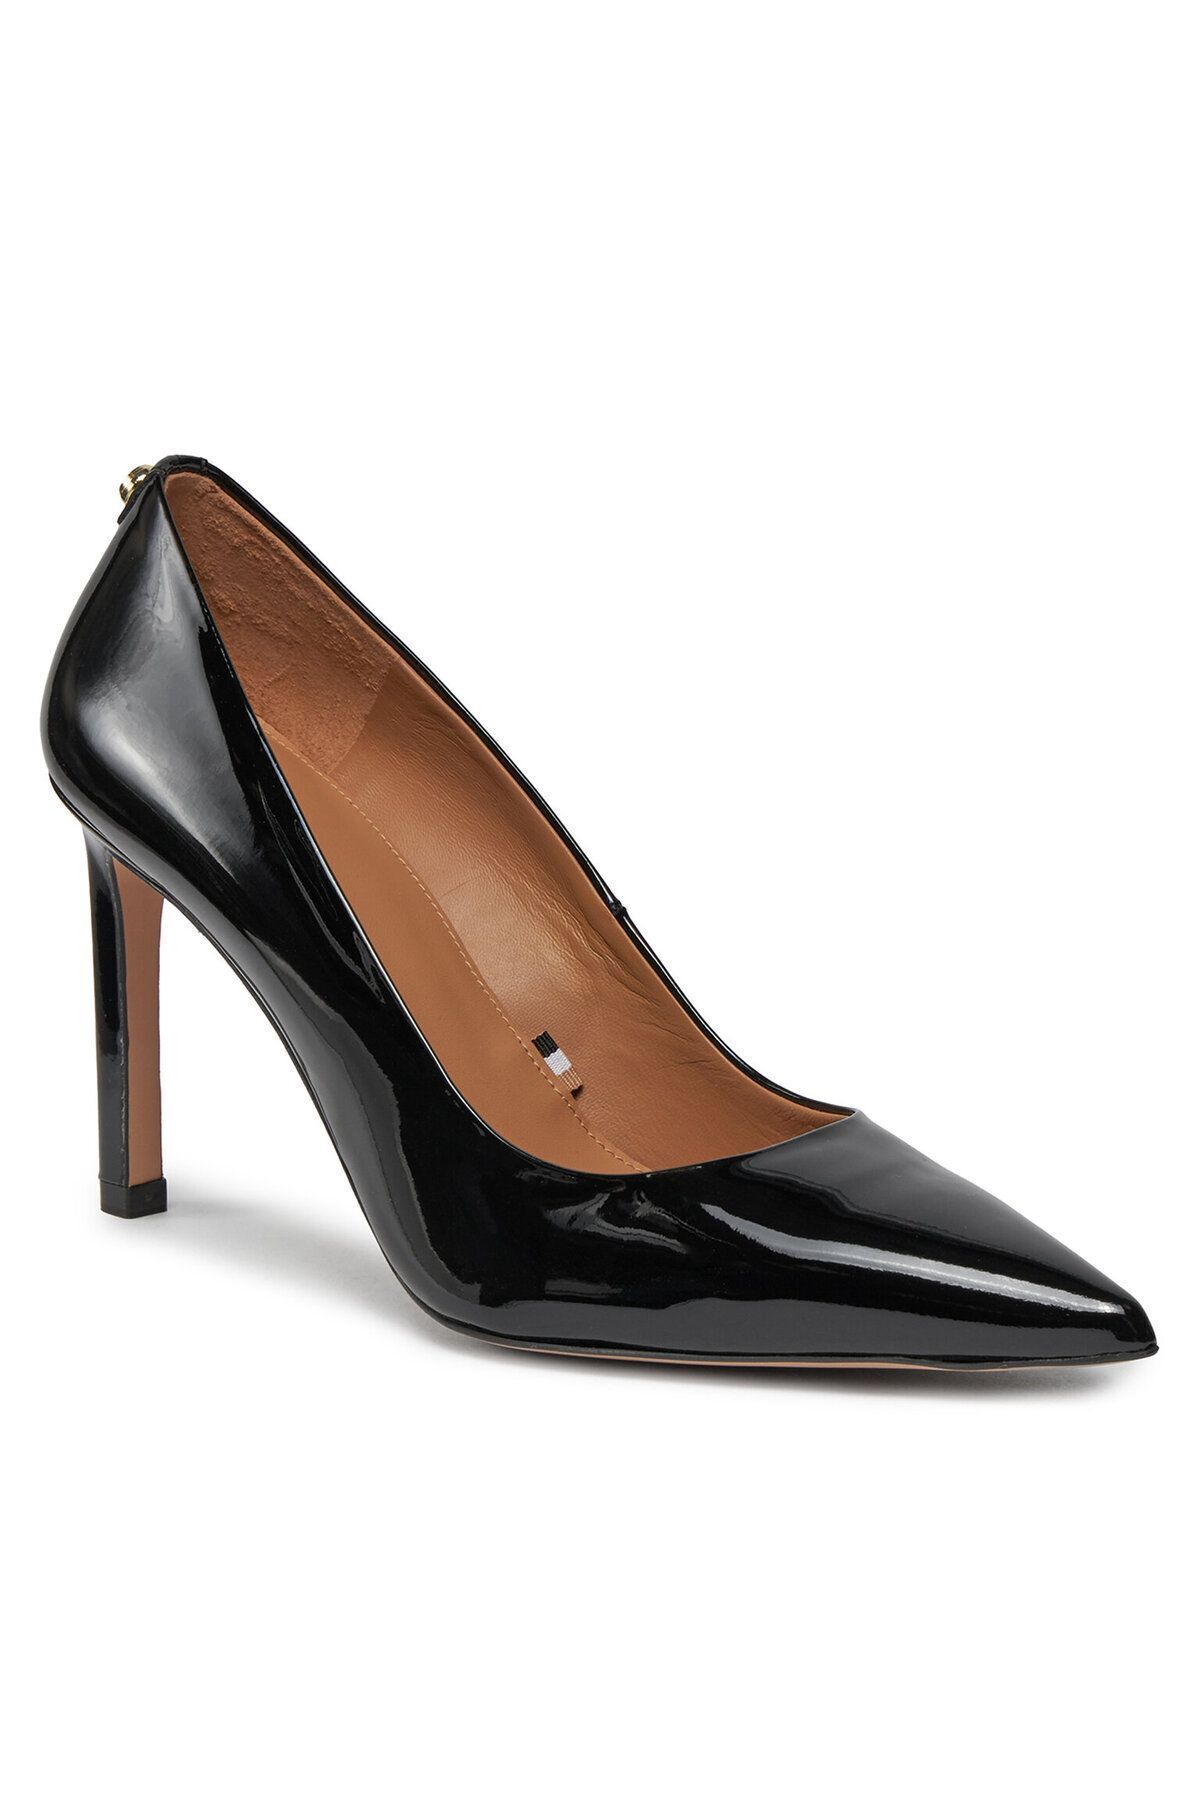 BOSS Kadın Marka Logolu Bağcıklı Kaydırmaz Tabanlı Günlük Siyah Klasik Topuklu Ayakkabı 50504634-001